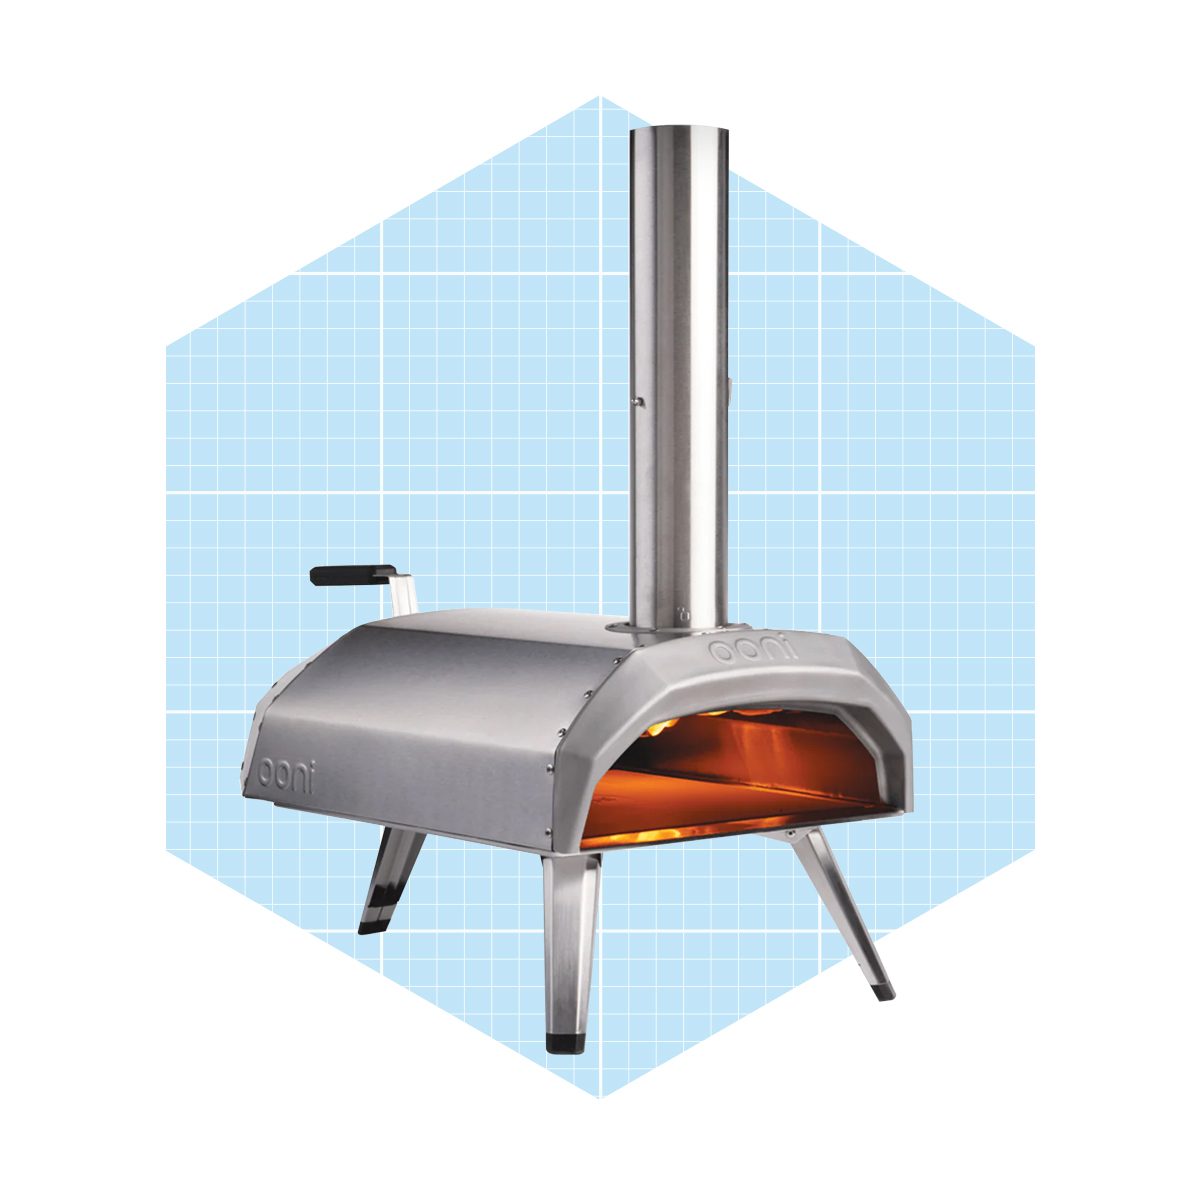 Ooni Karu 12 Multi Fuel Pizza Oven Ecomm Ooni.com